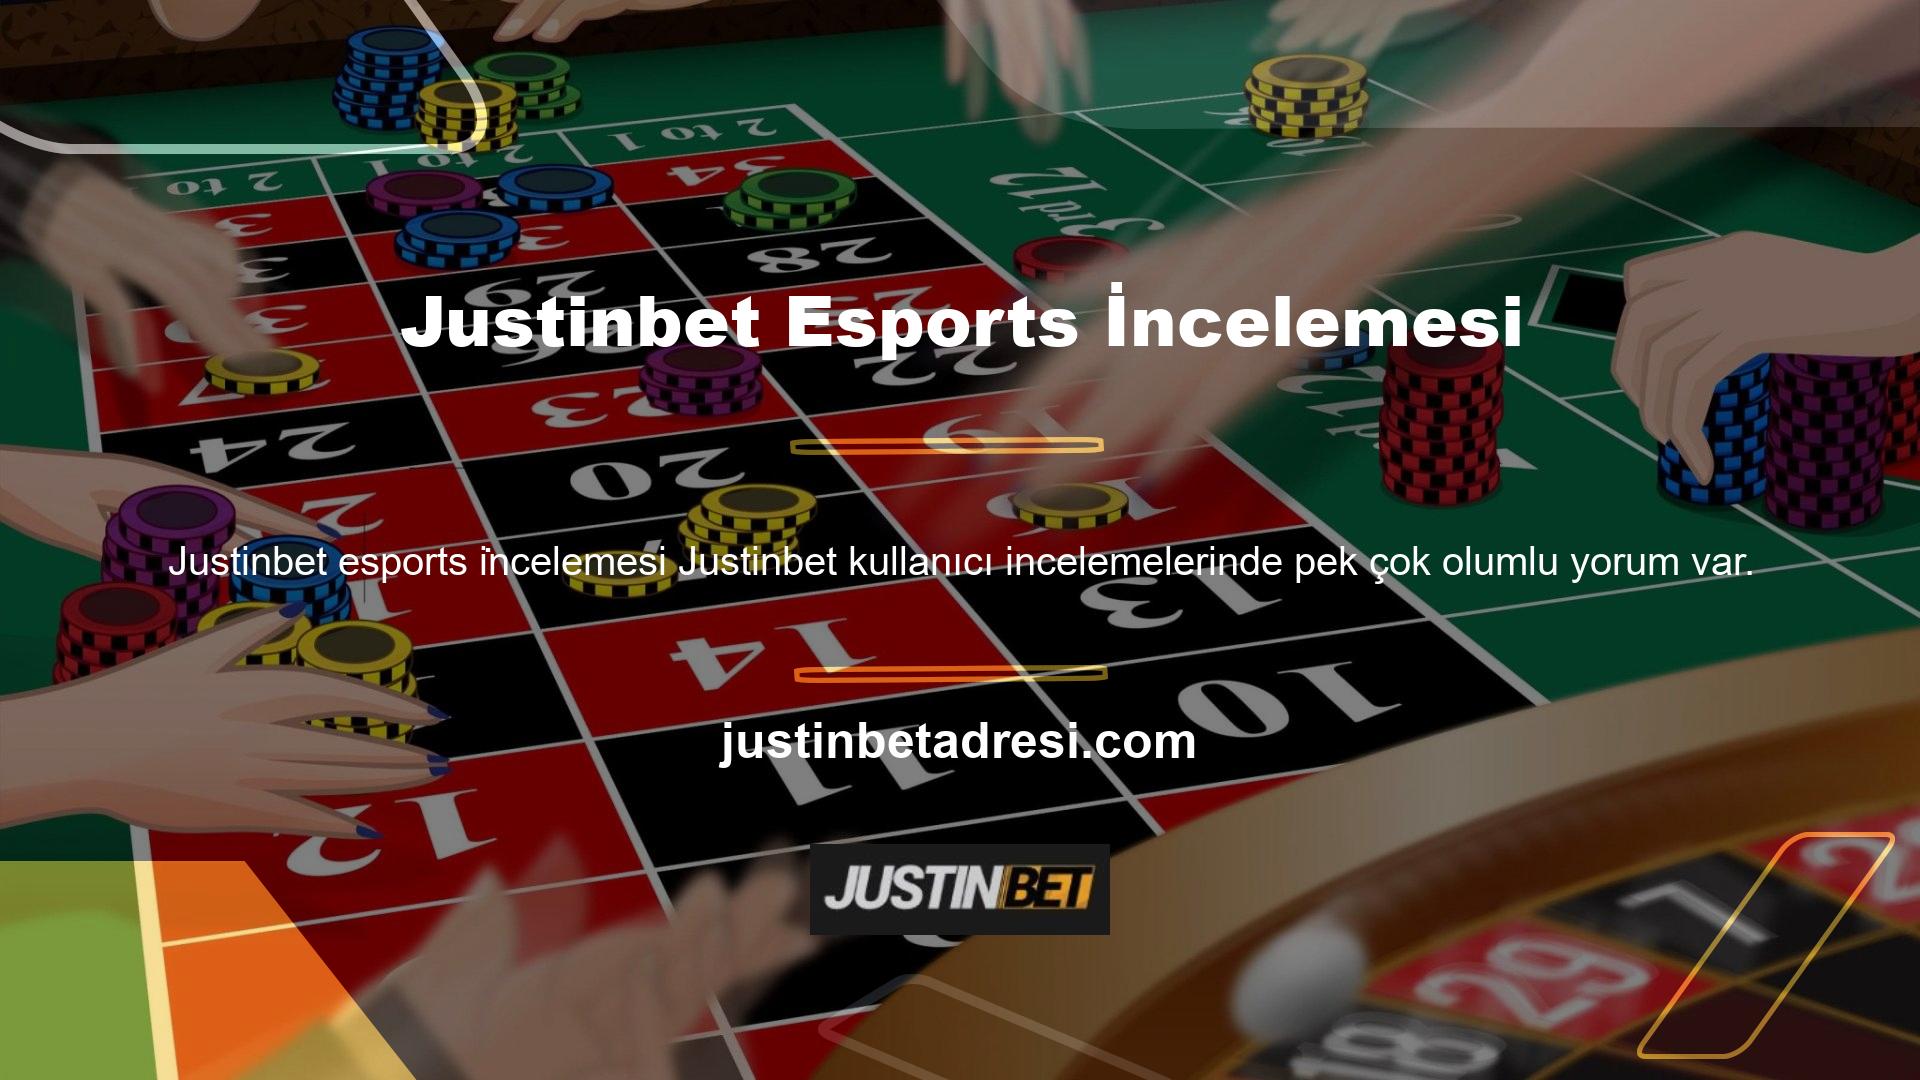 Justinbet üyelik, para yatırma, canlı destek gibi çeşitli hizmetler sunan en ünlü sitelerden biridir